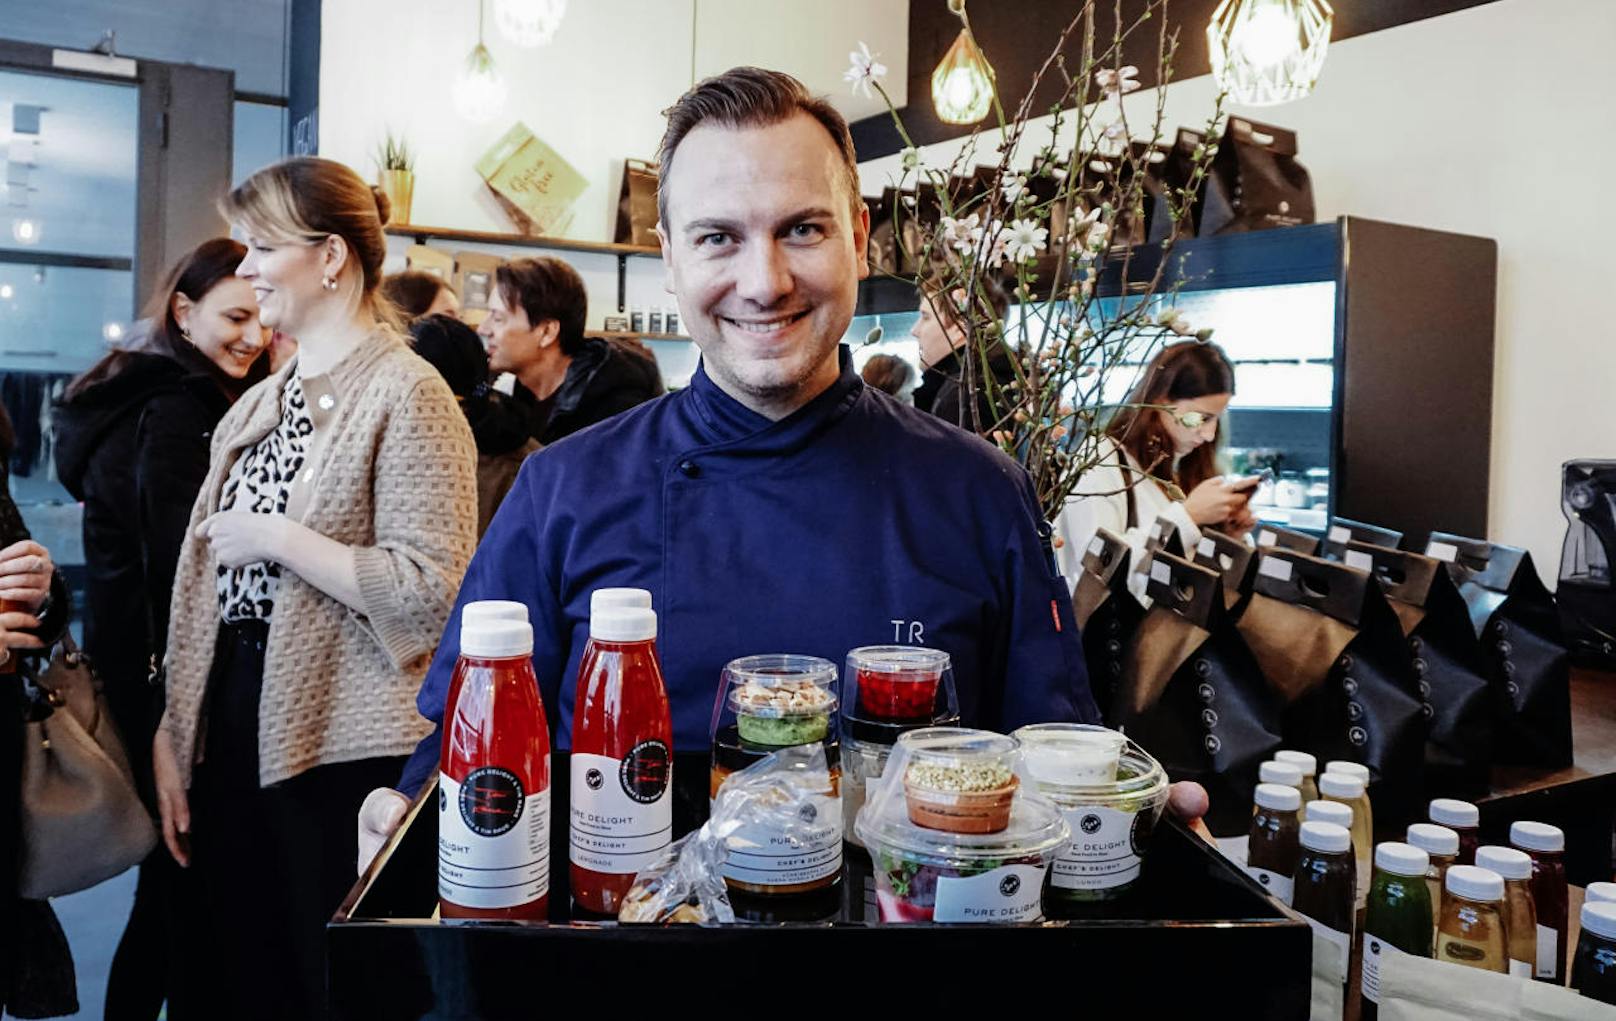 Tim Raue präsentierte seine neue Gourmet Clean Eating-Linie in Wien